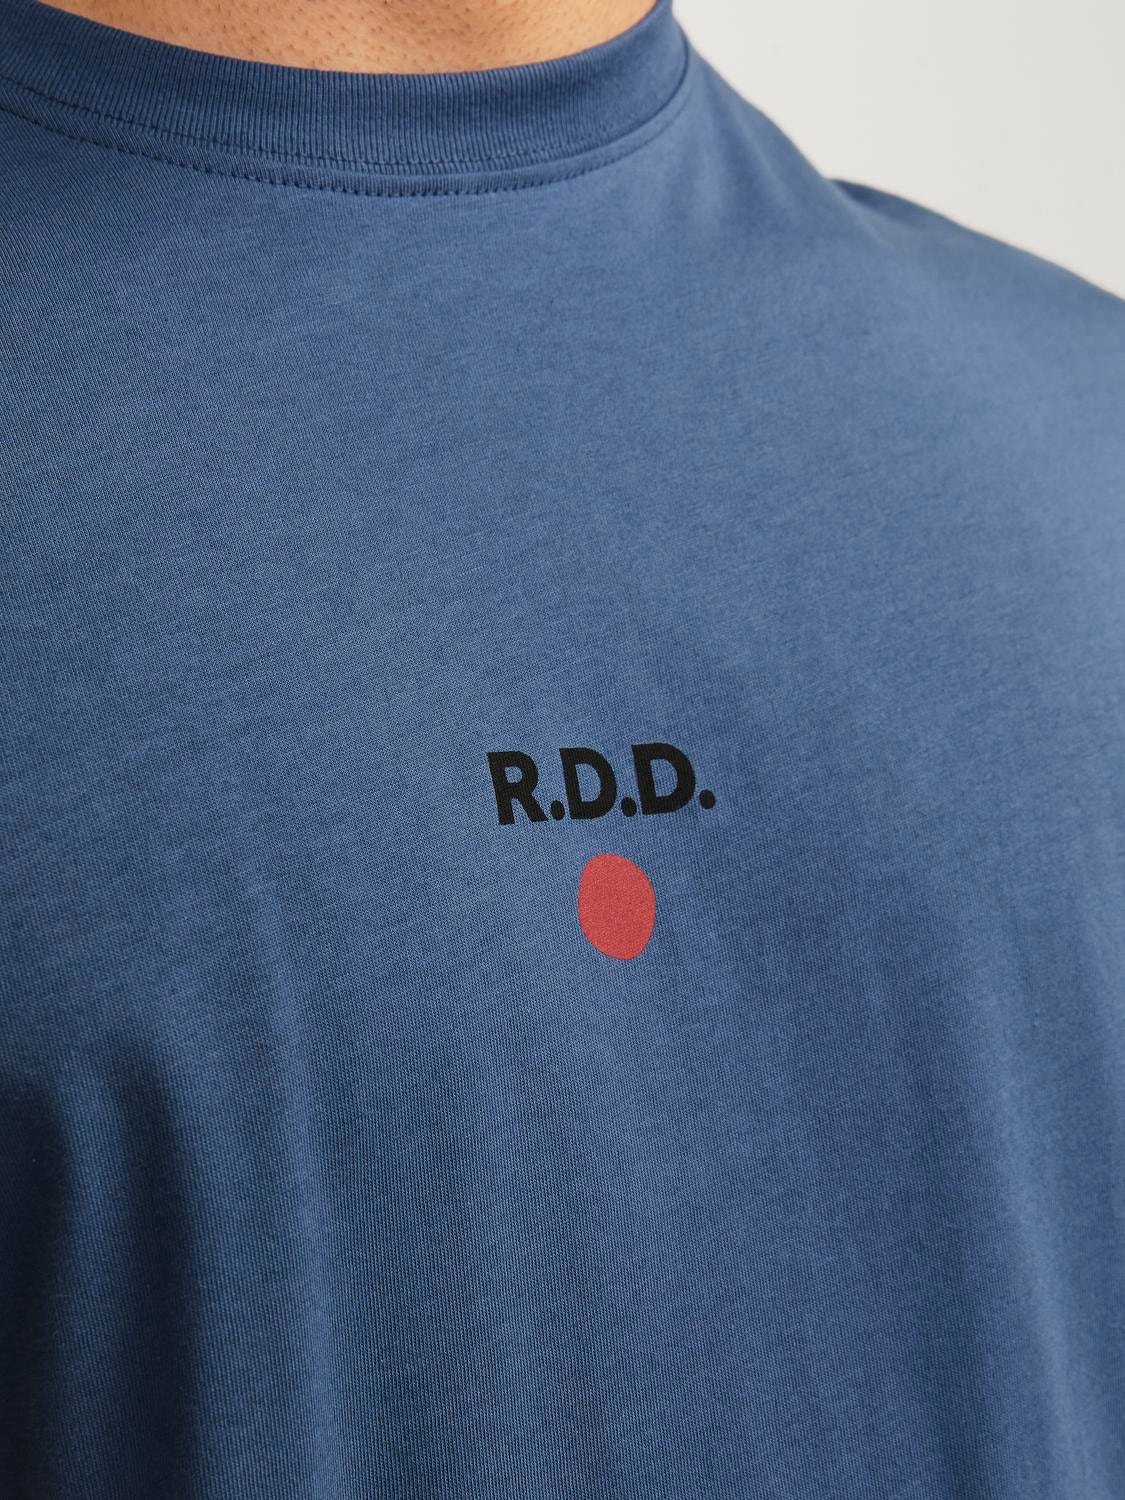 Jack & Jones RDD T-shirt Estampar Decote Redondo -Vintage Indigo - 12254550